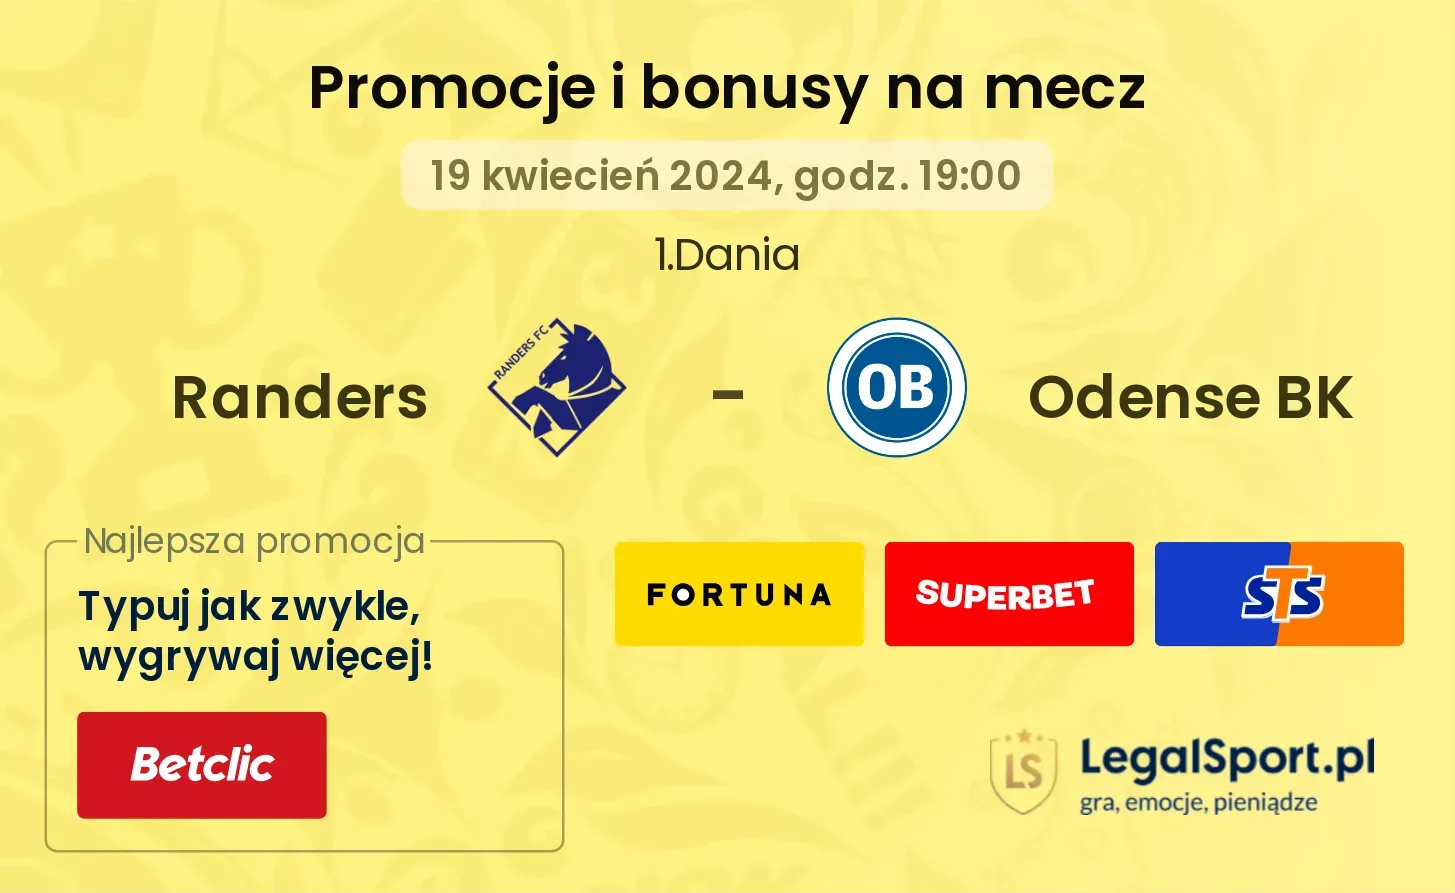 Randers - Odense BK promocje bonusy na mecz